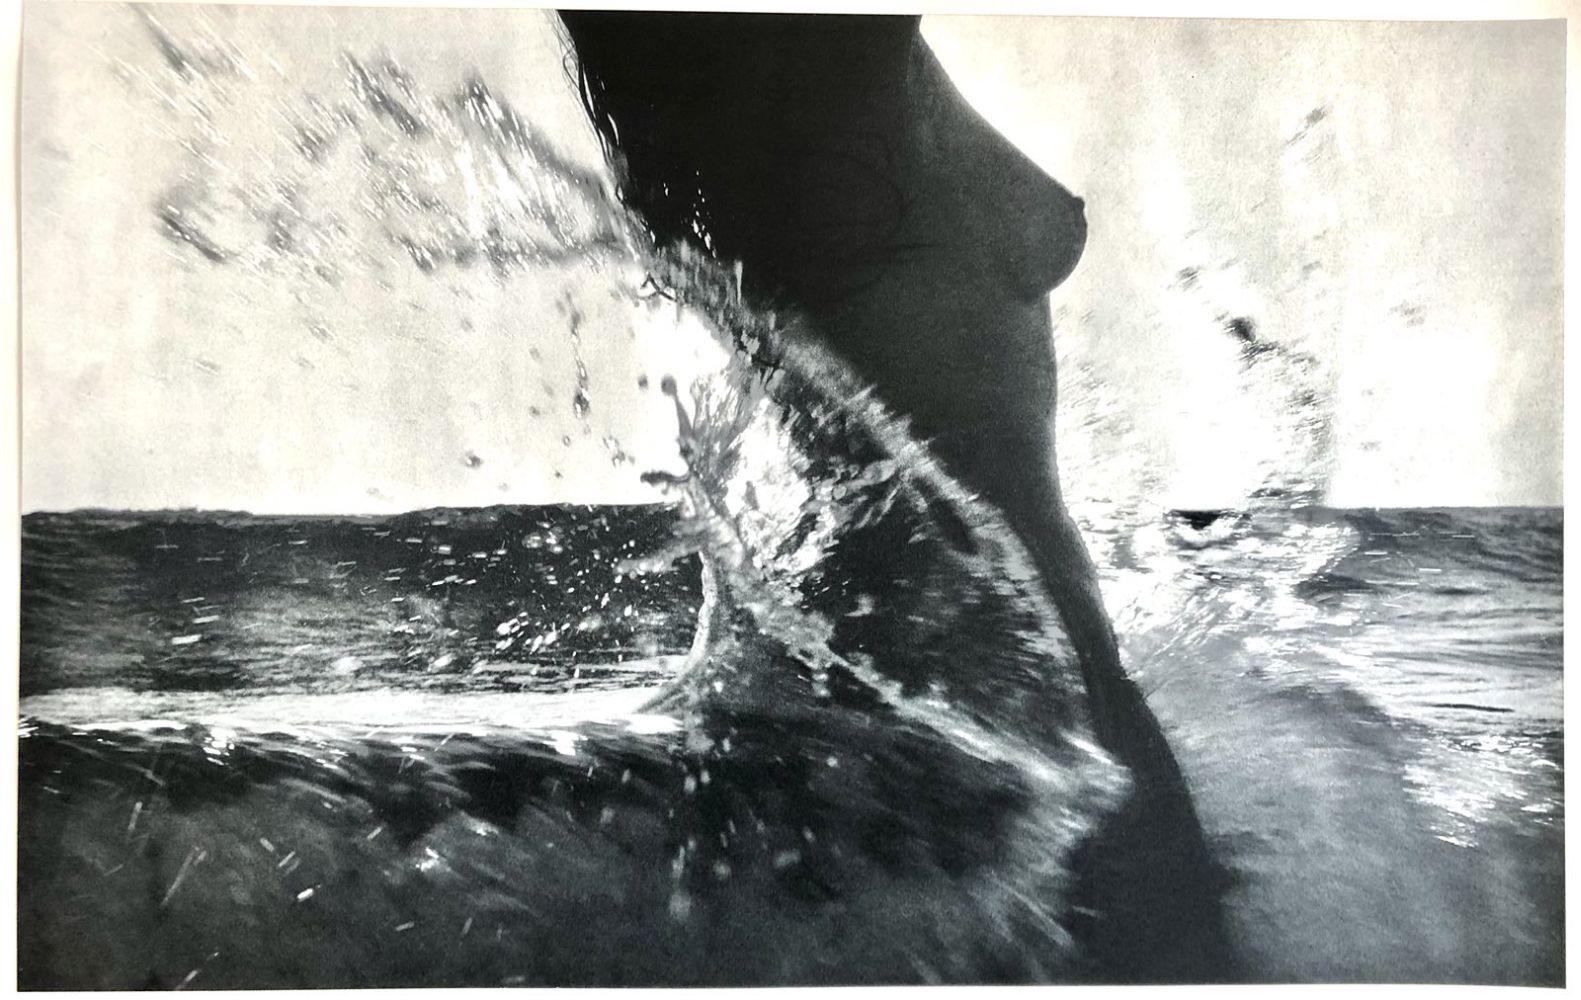 Née de la Vague (Born of the Waves) by Lucien Clergue, 1968